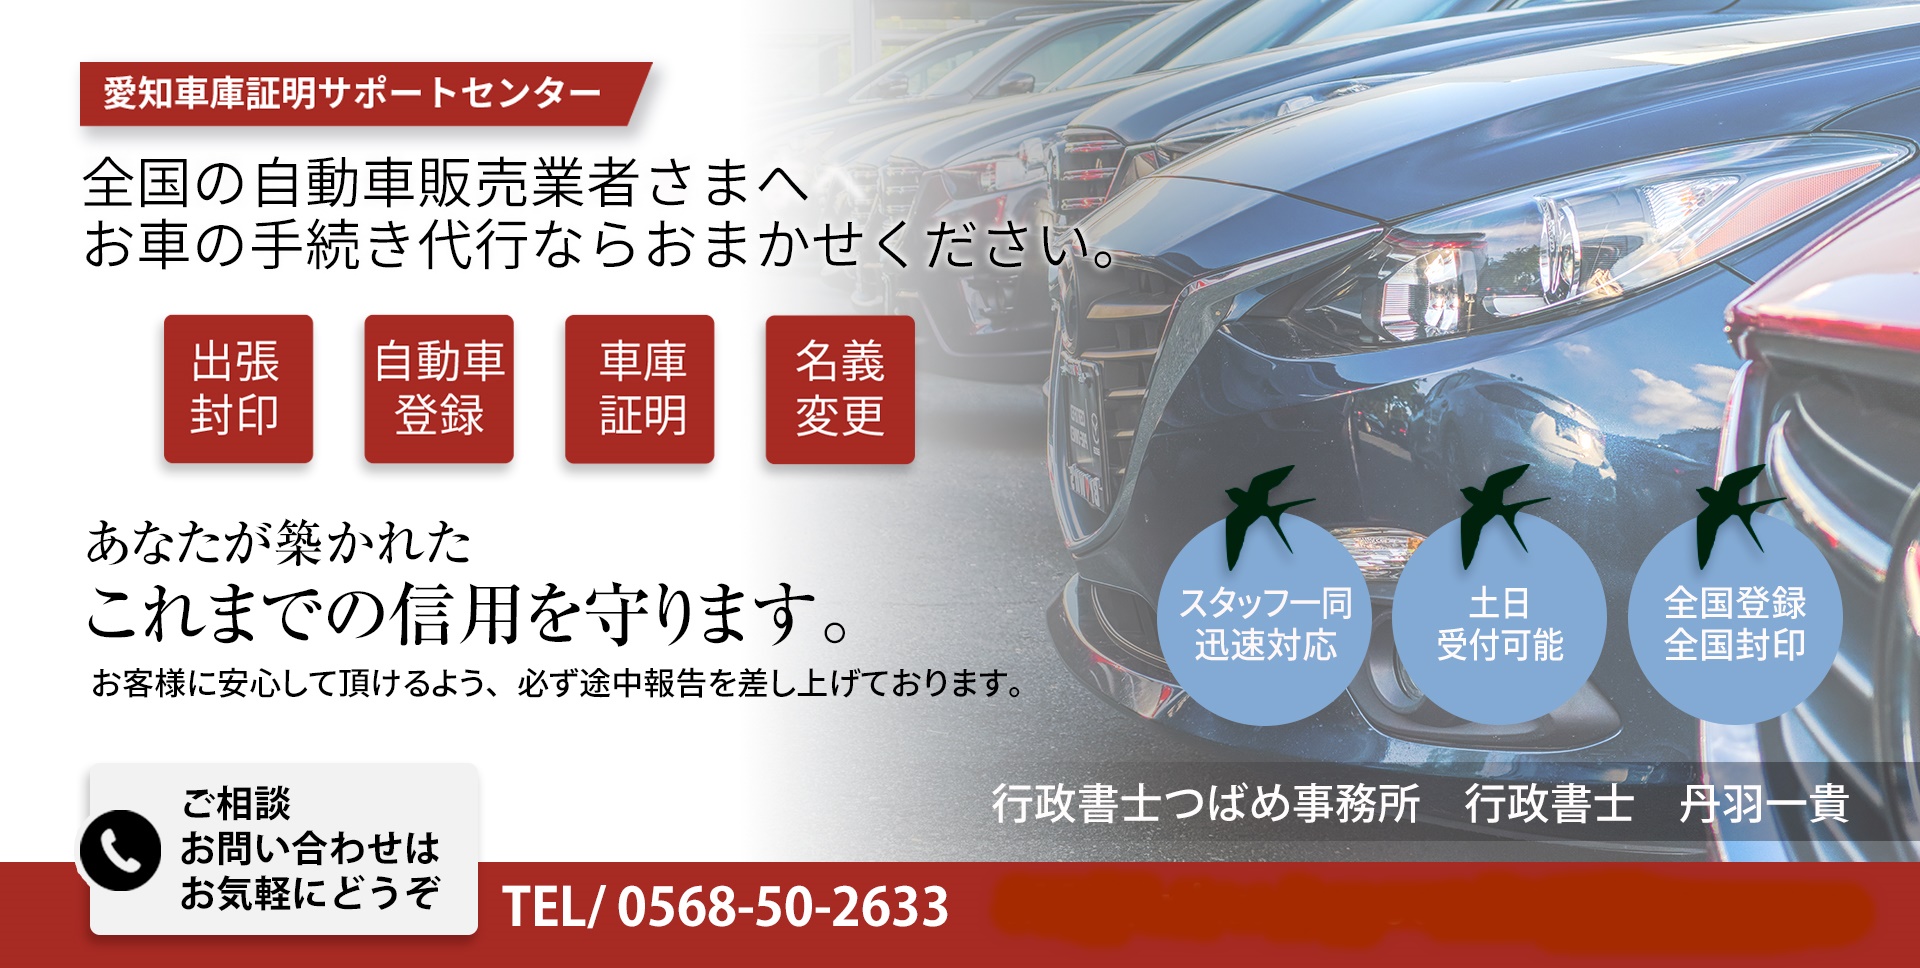 名古屋市港区の車庫証明 | 行政書士つばめ事務所が港警察署の車庫証明を代行します